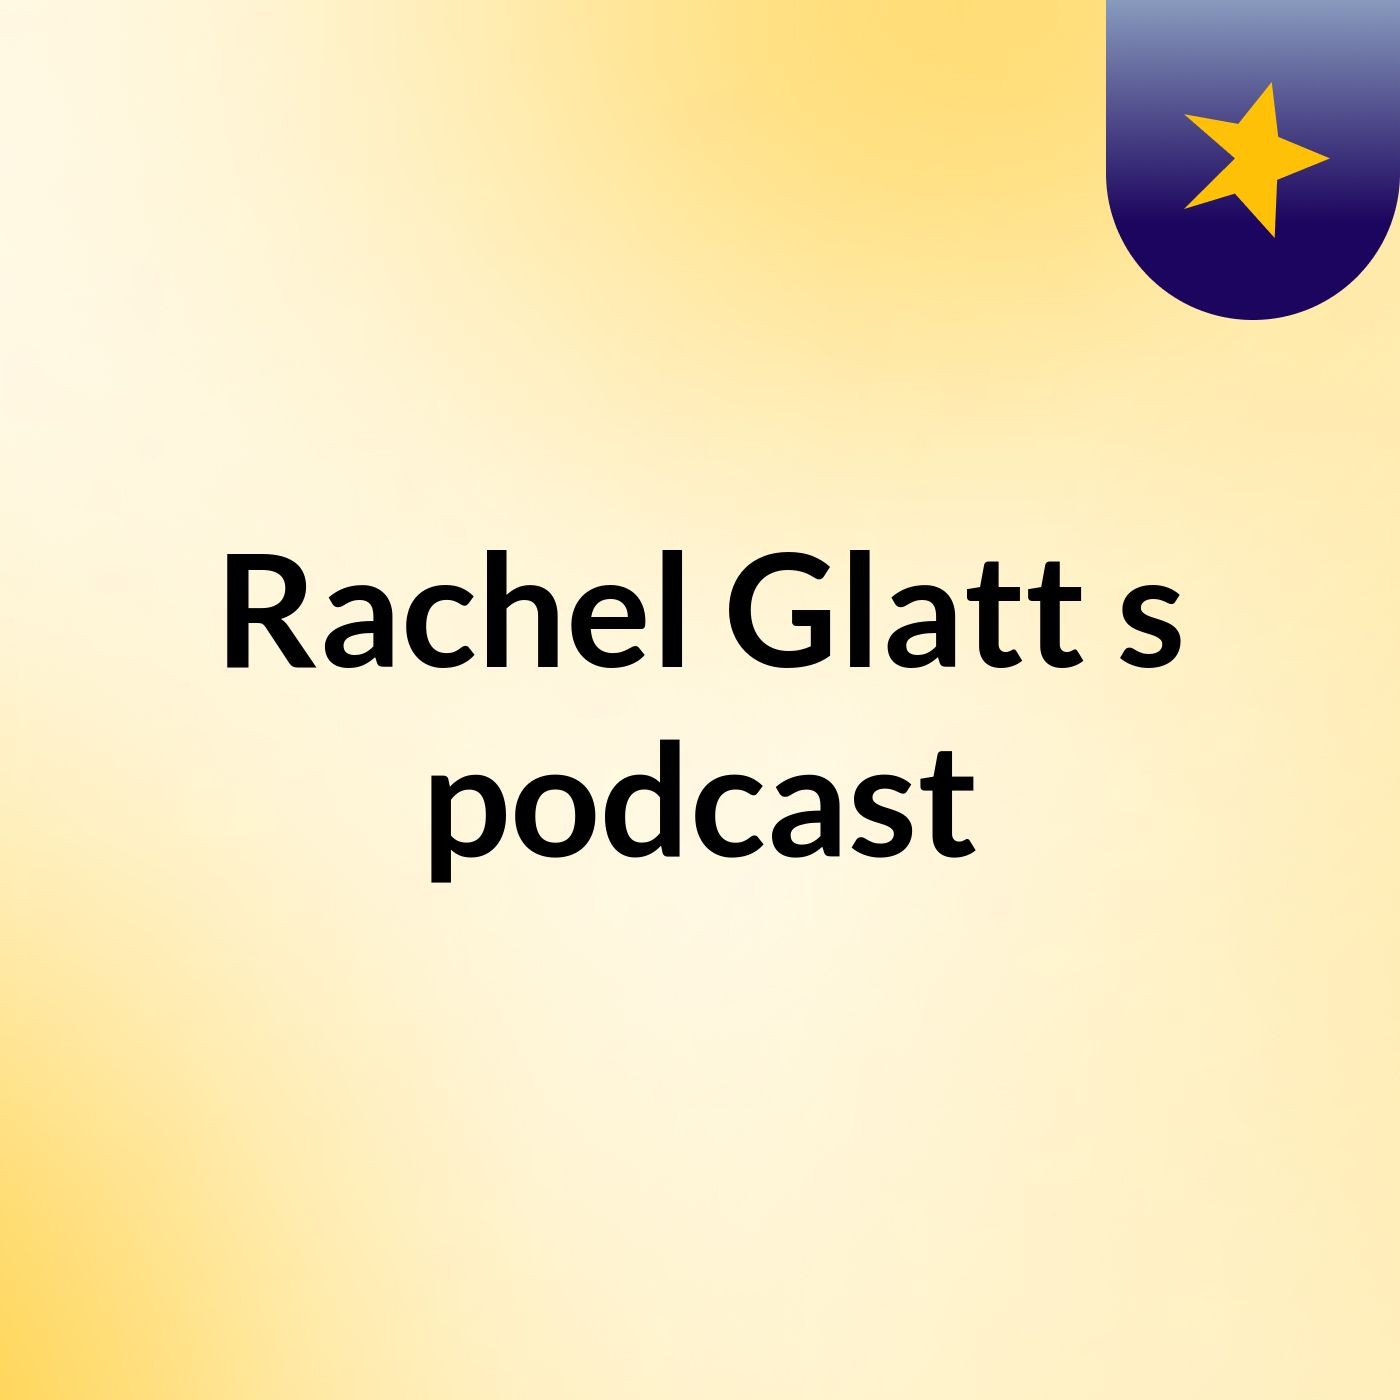 Rachel Glatt's podcast